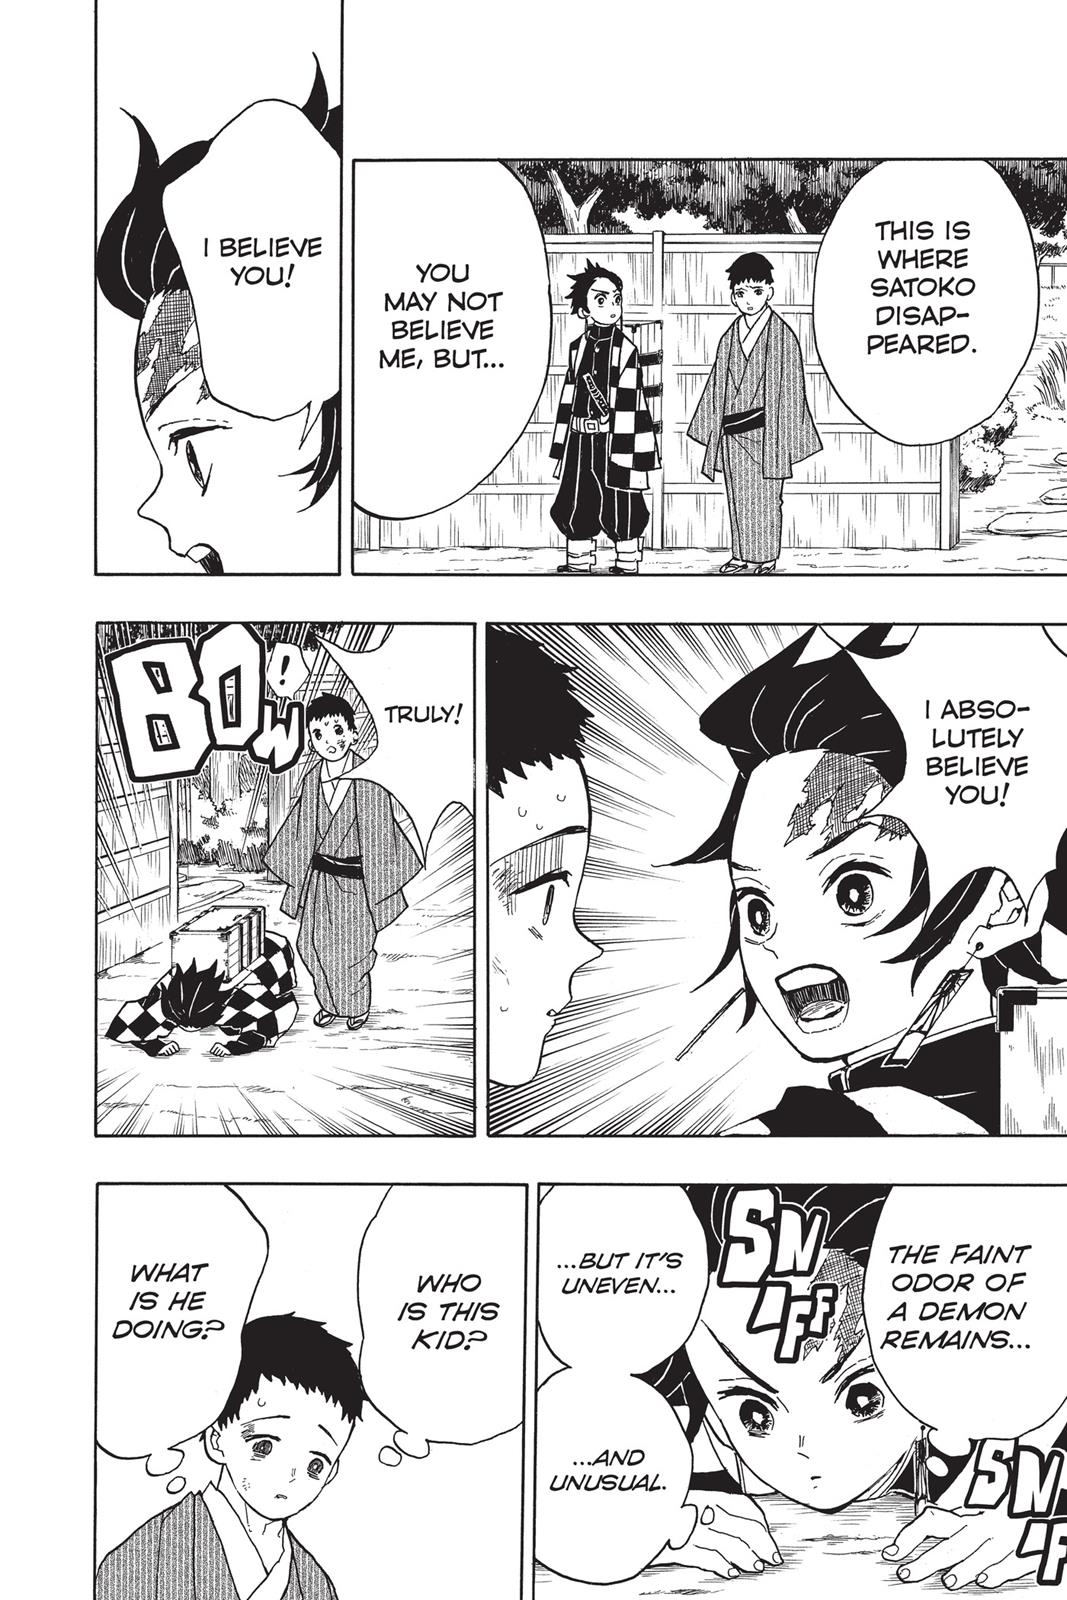 Demon Slayer Manga Manga Chapter - 10 - image 5